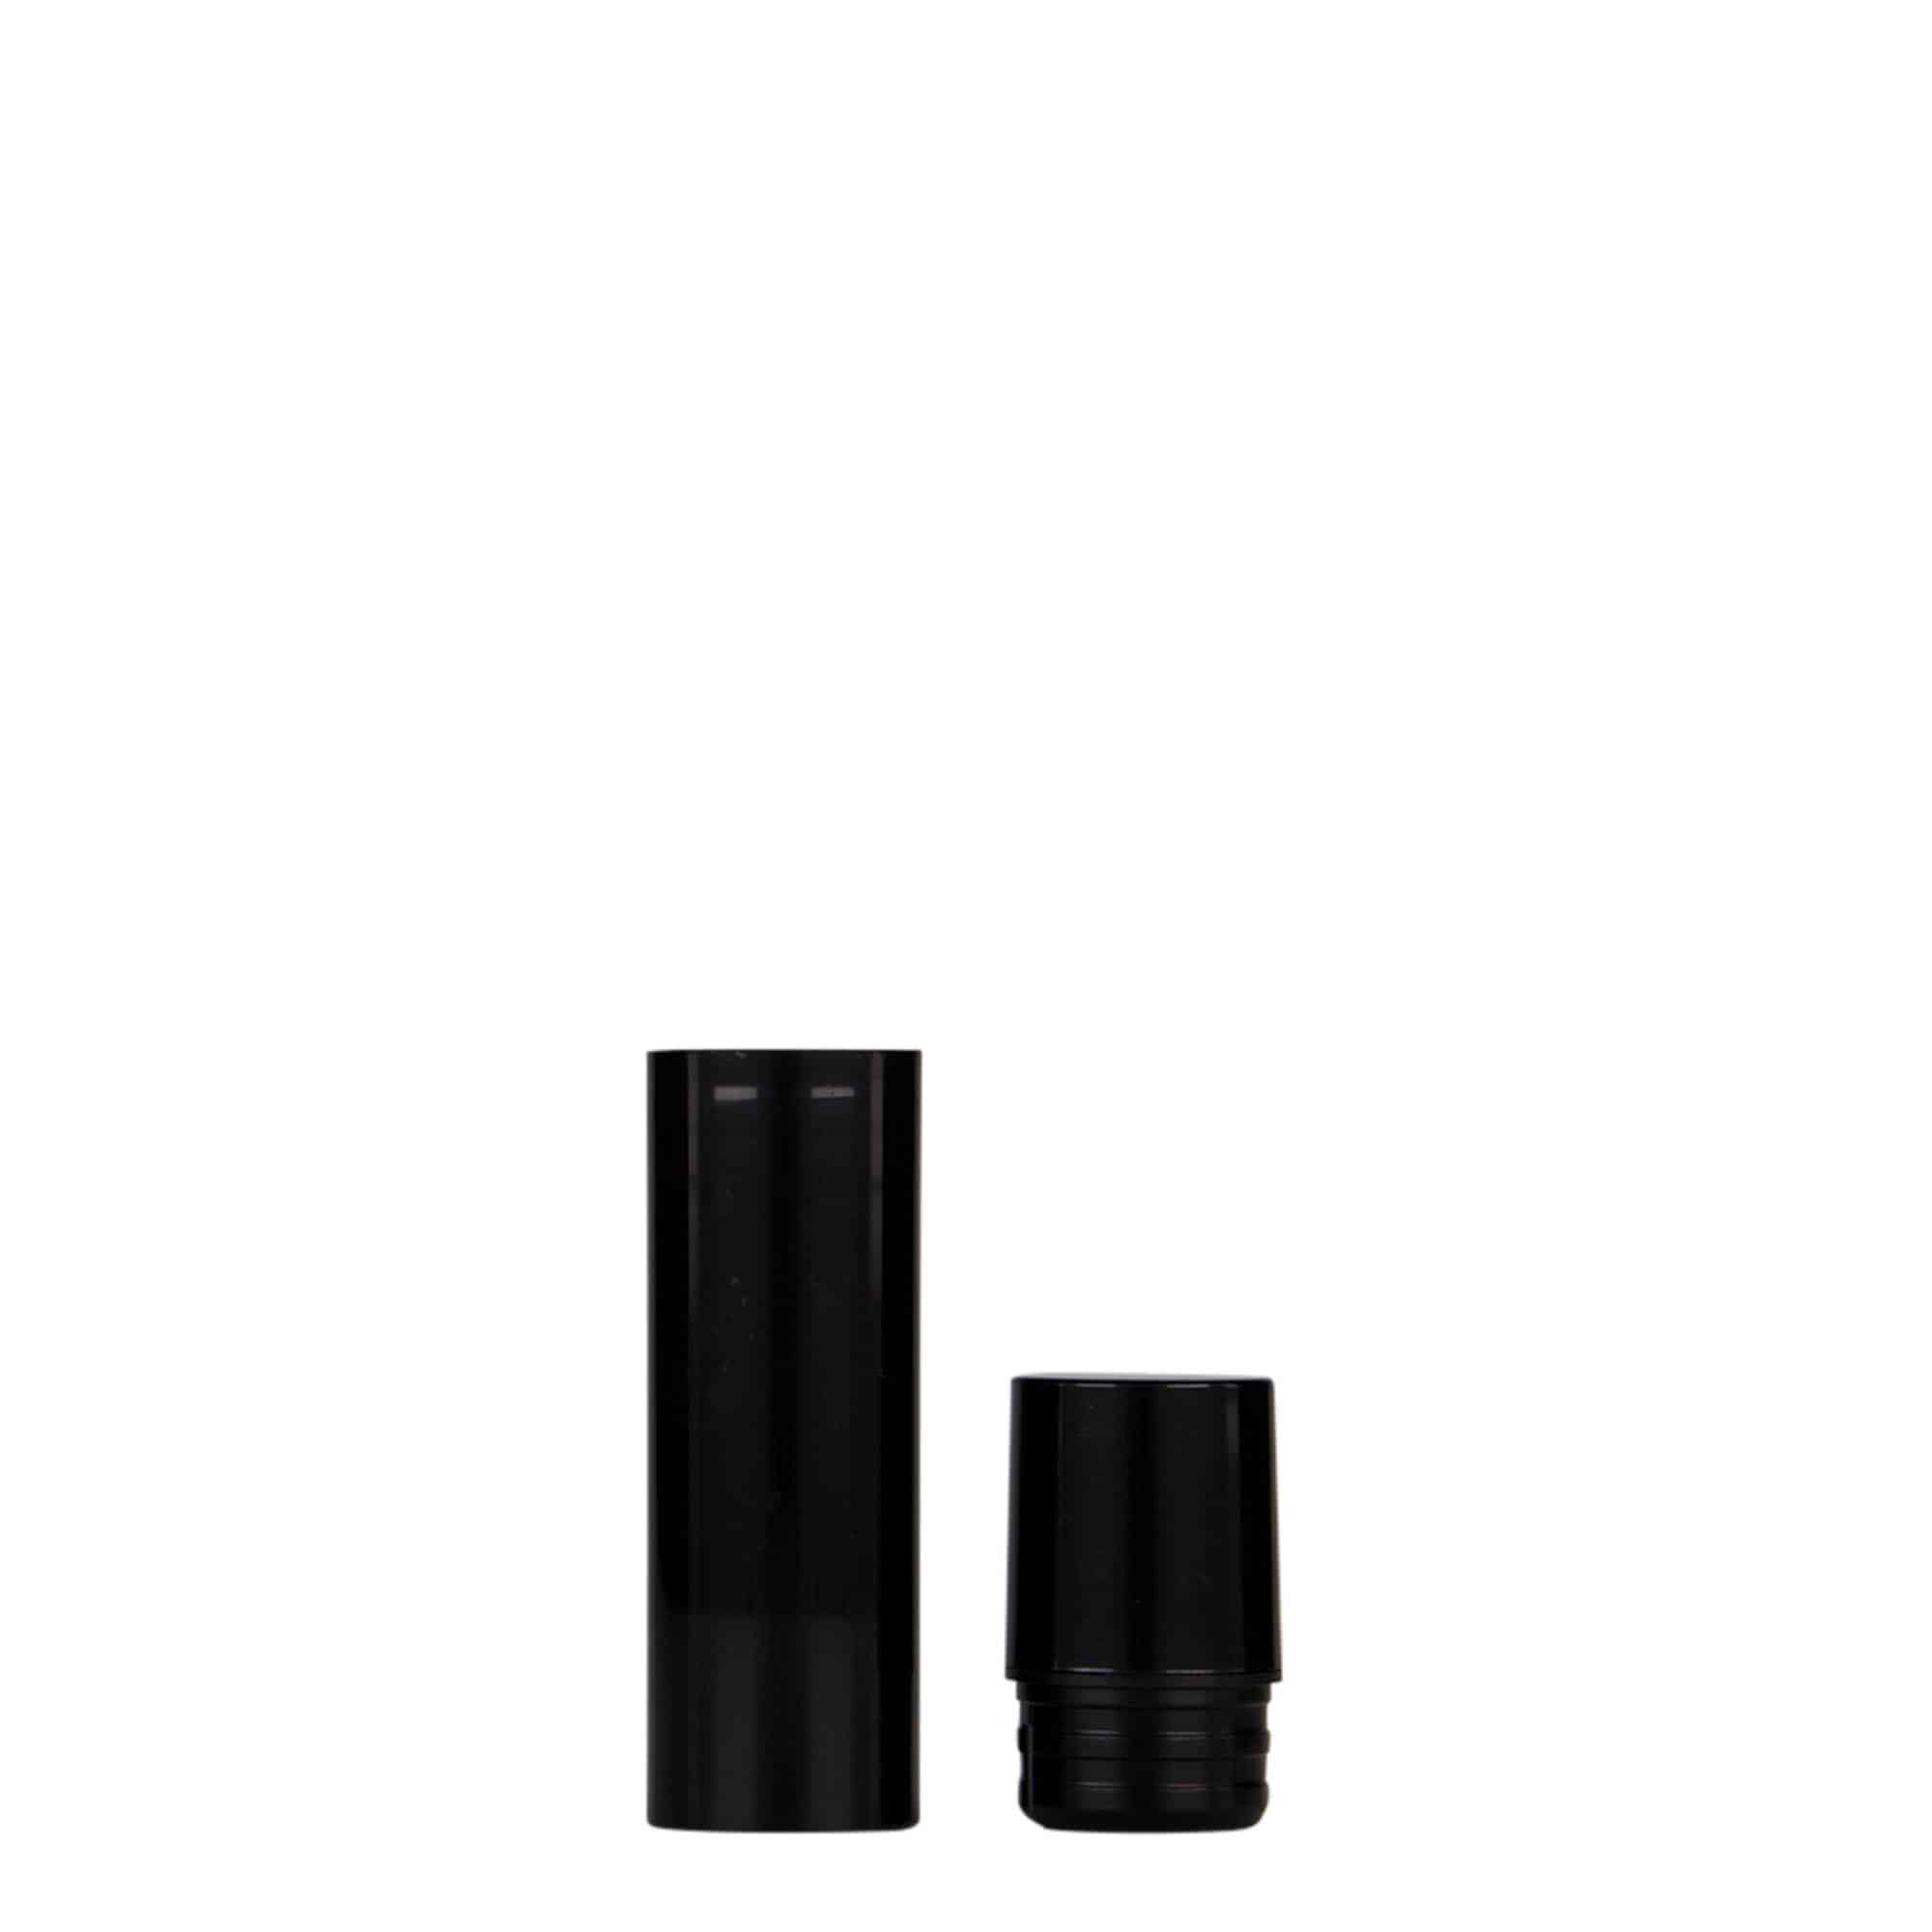 Bezvzduchový dávkovač 10 ml 'Nano', plast PP, černý